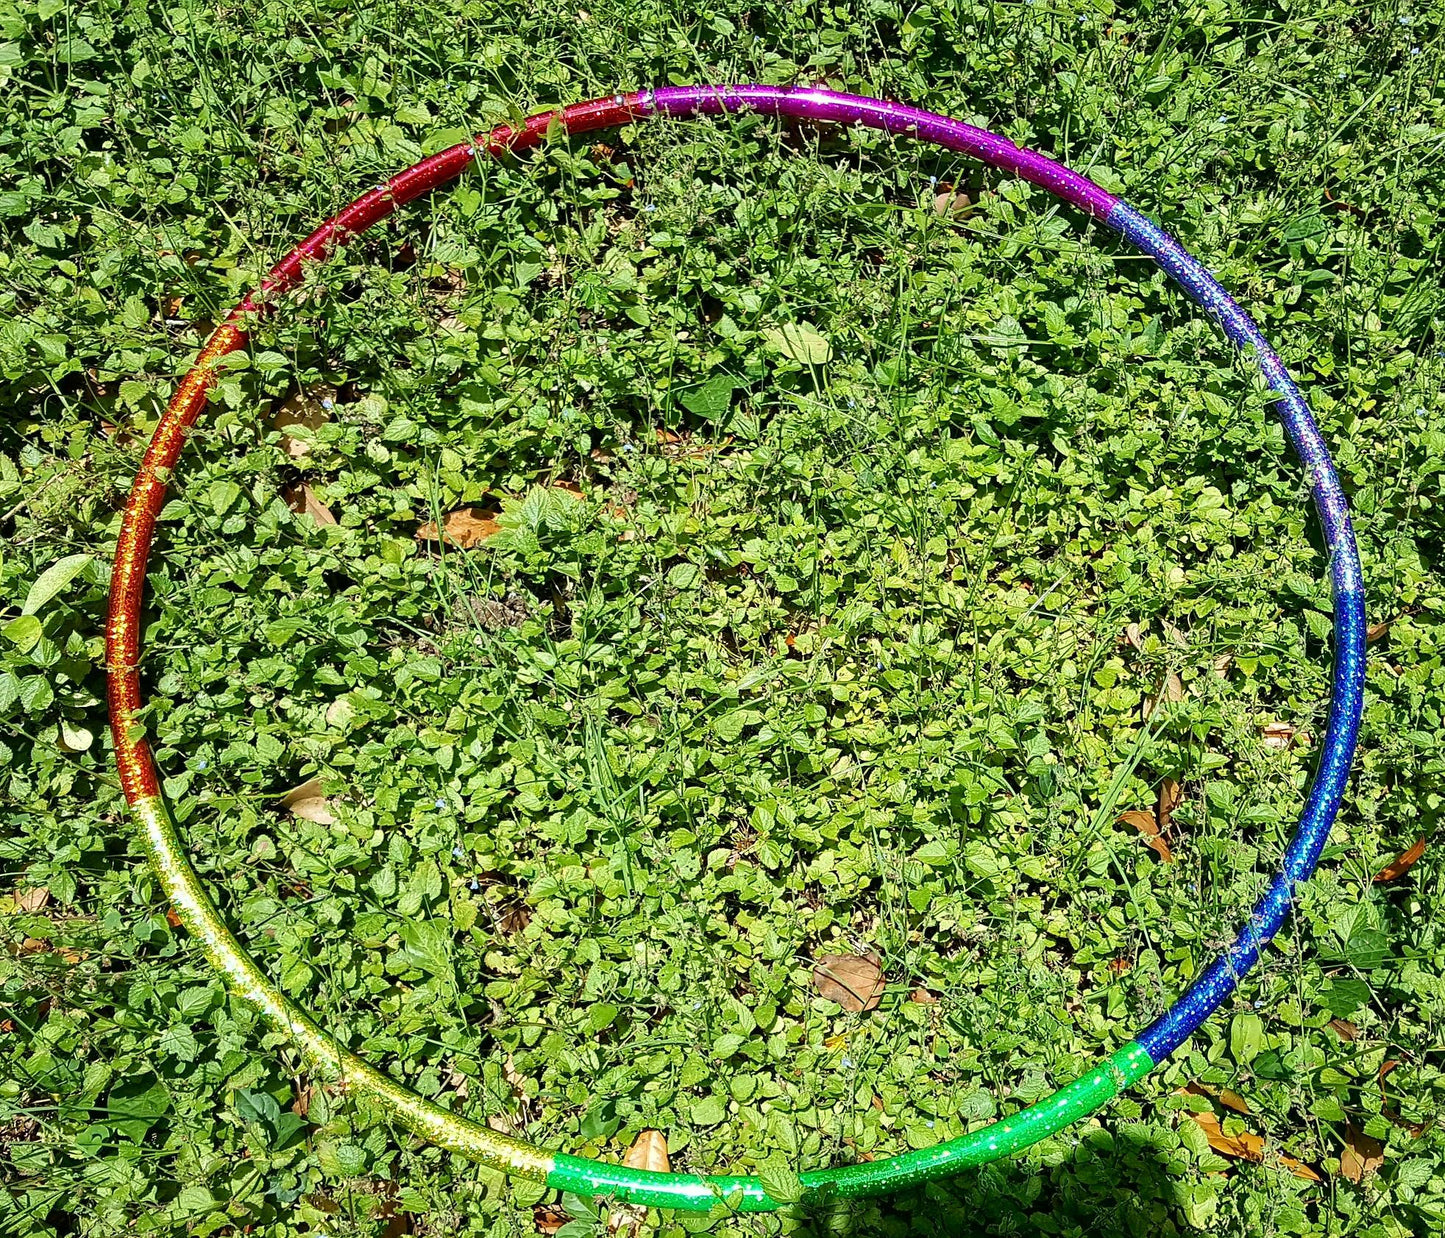 Rainbow Spectrum Taped Hoop